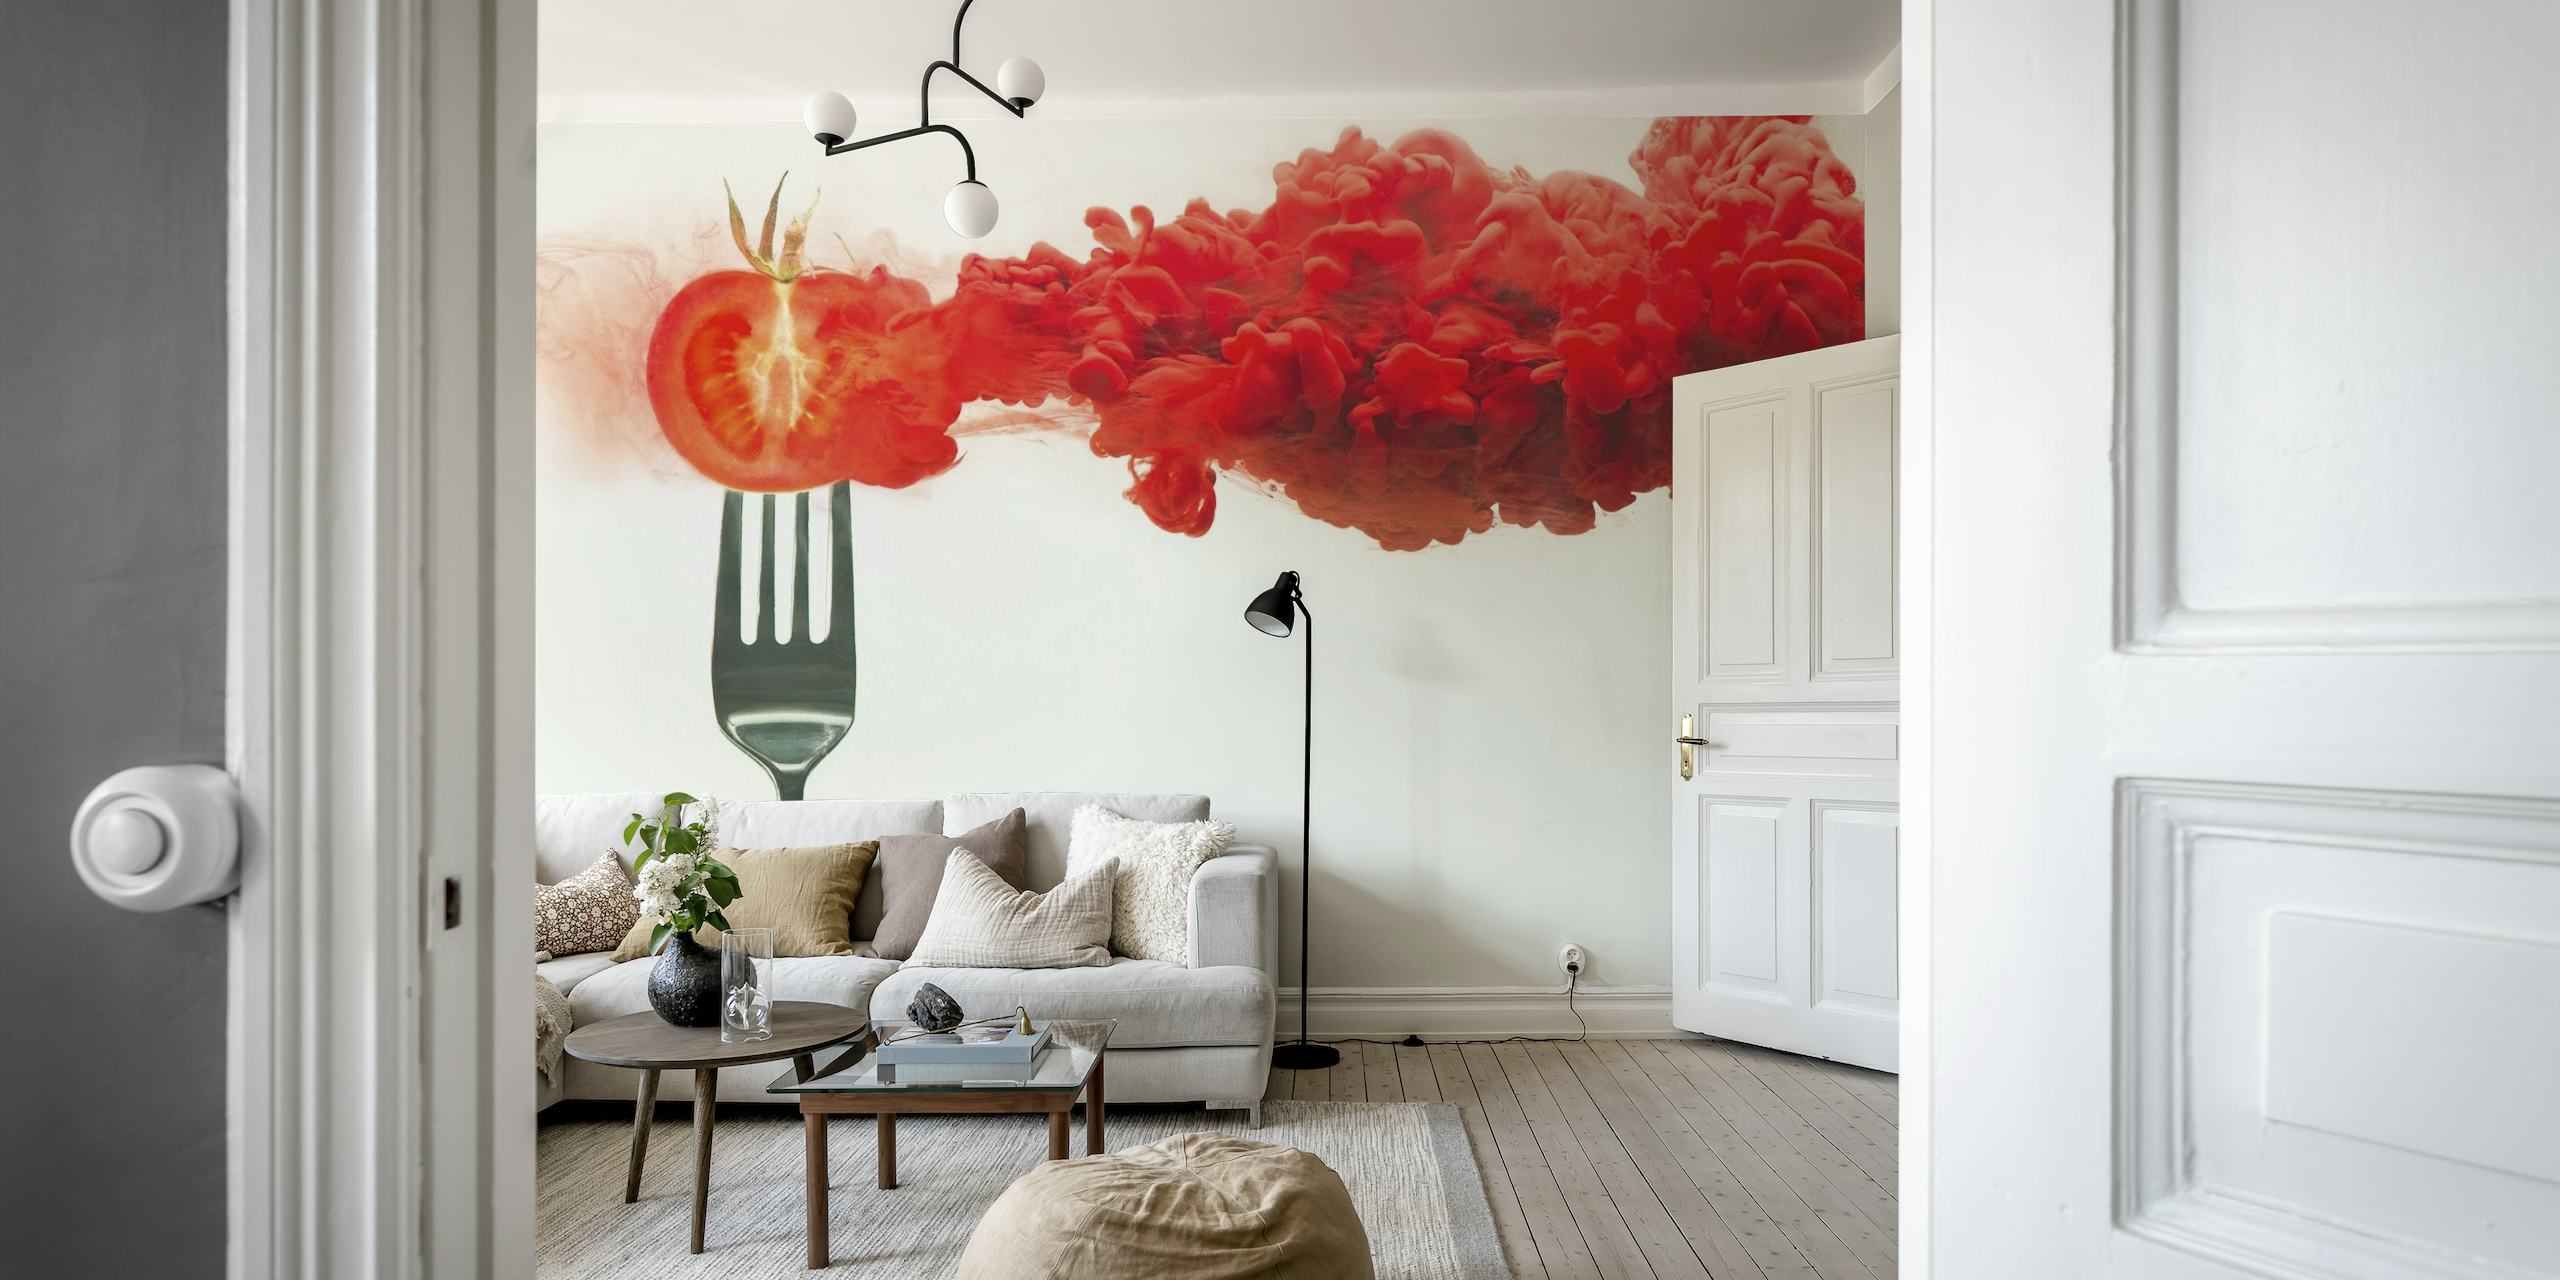 Disintegrated tomato wallpaper